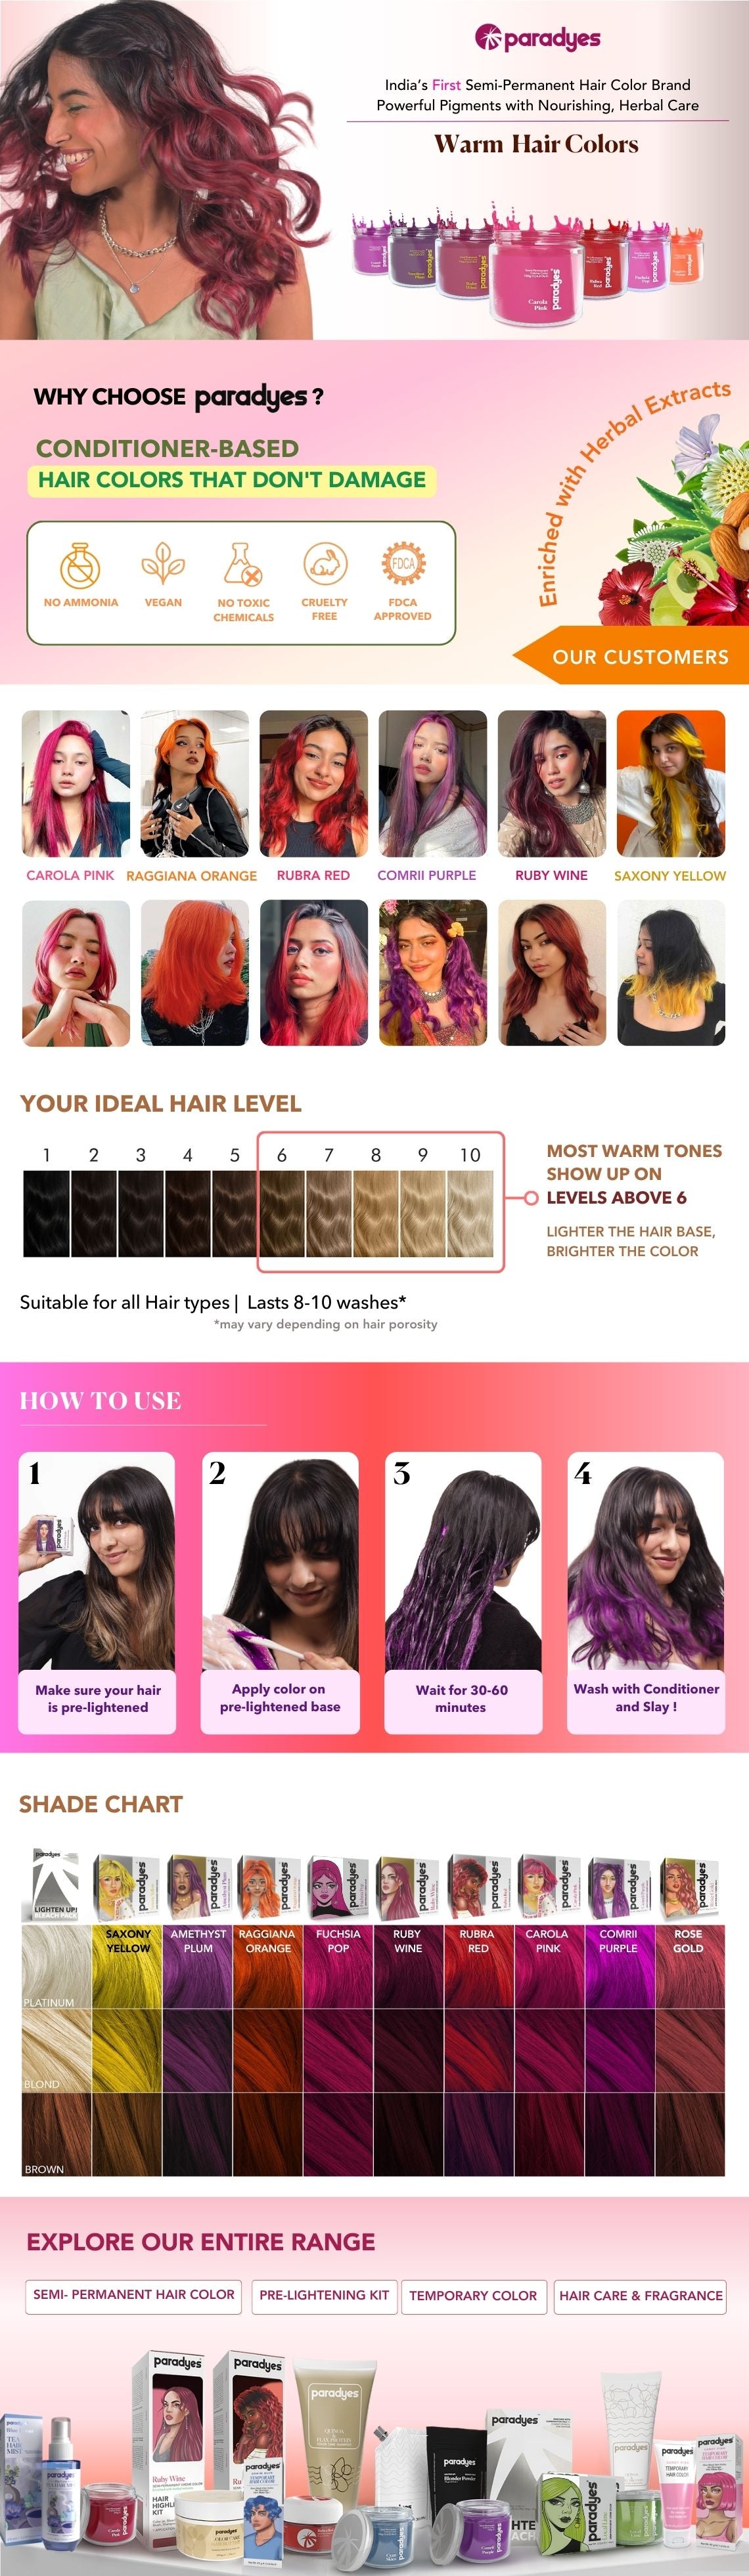 Comrii Purple Semi-Permanent Hair Color